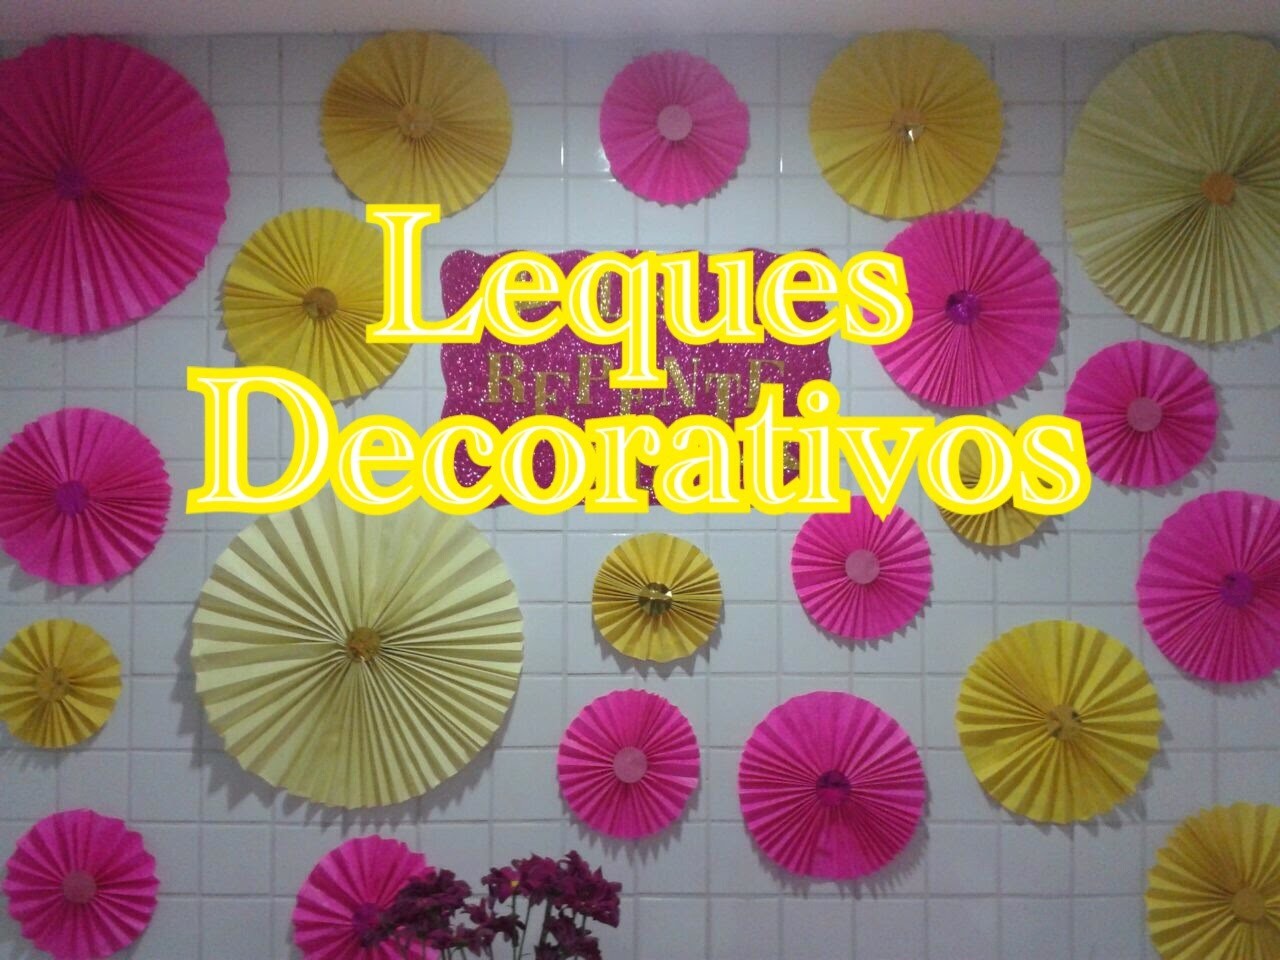 Leques Decorativos - Como Fazer? - DIY